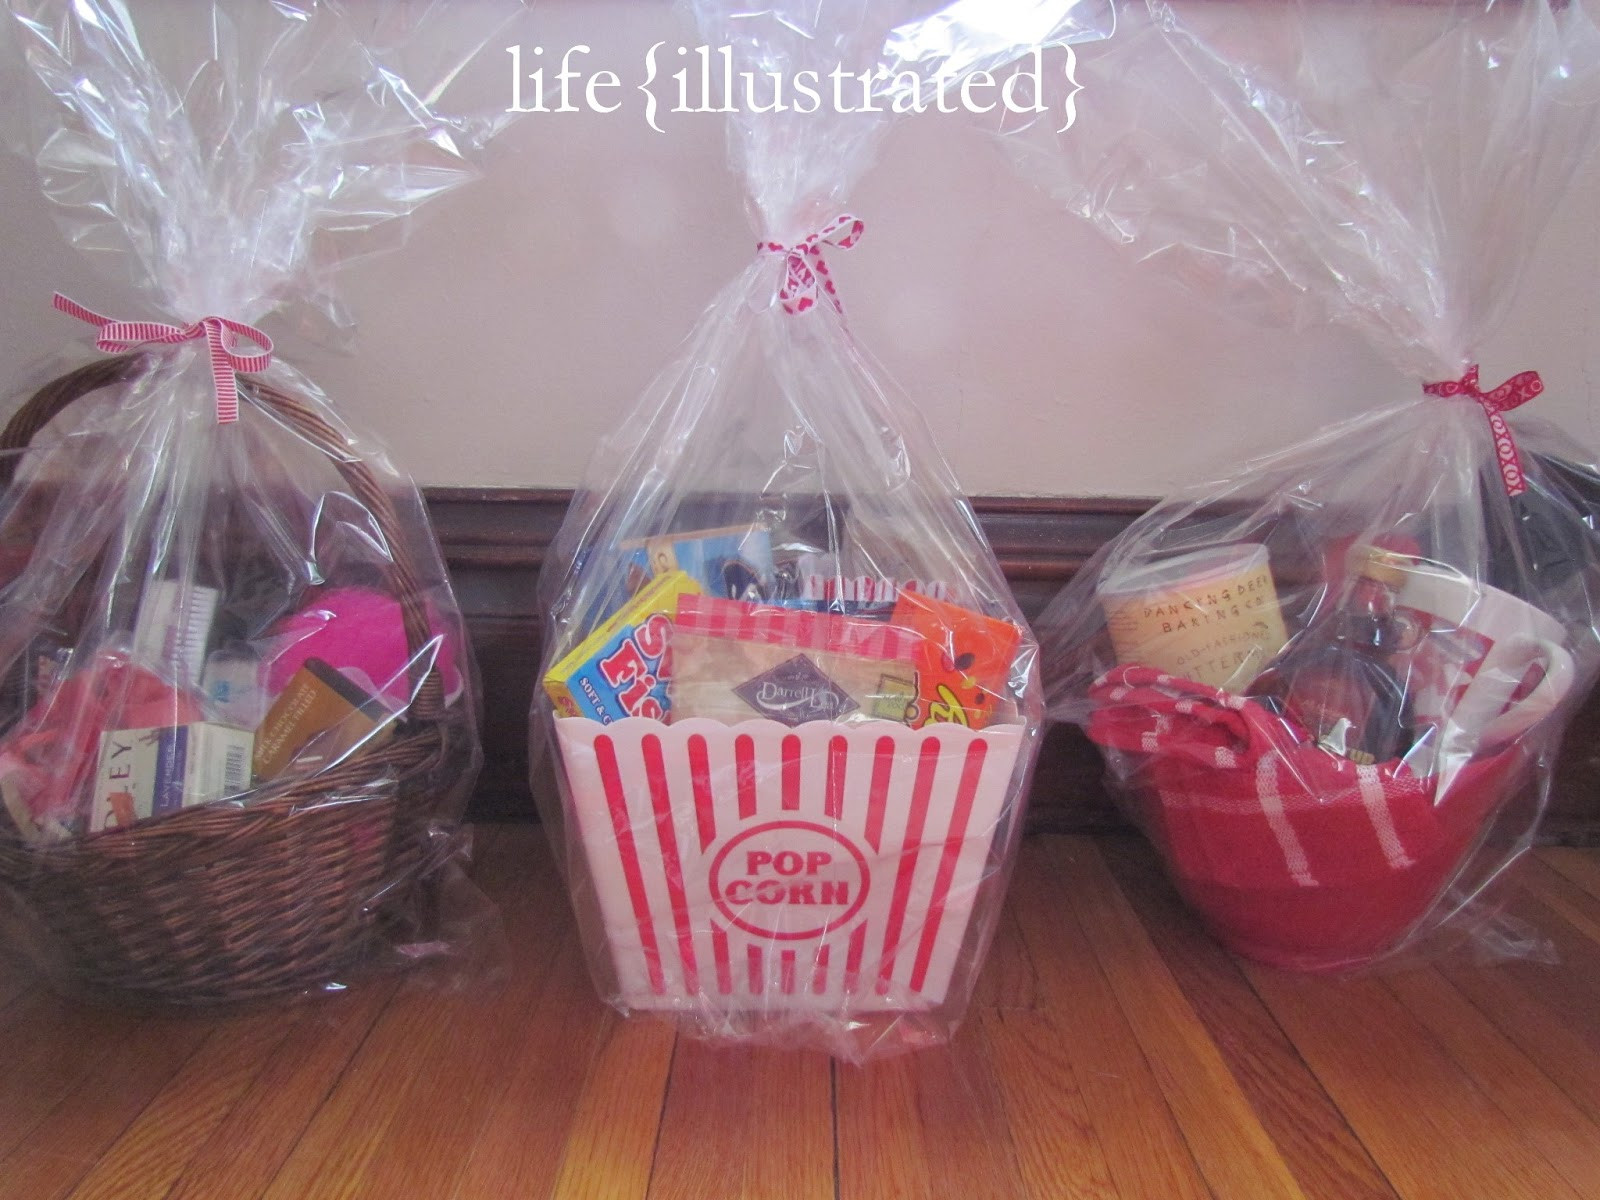 Best ideas about Valentine Gift Basket Ideas
. Save or Pin life illustrated Valentine Gift Basket Ideas Now.